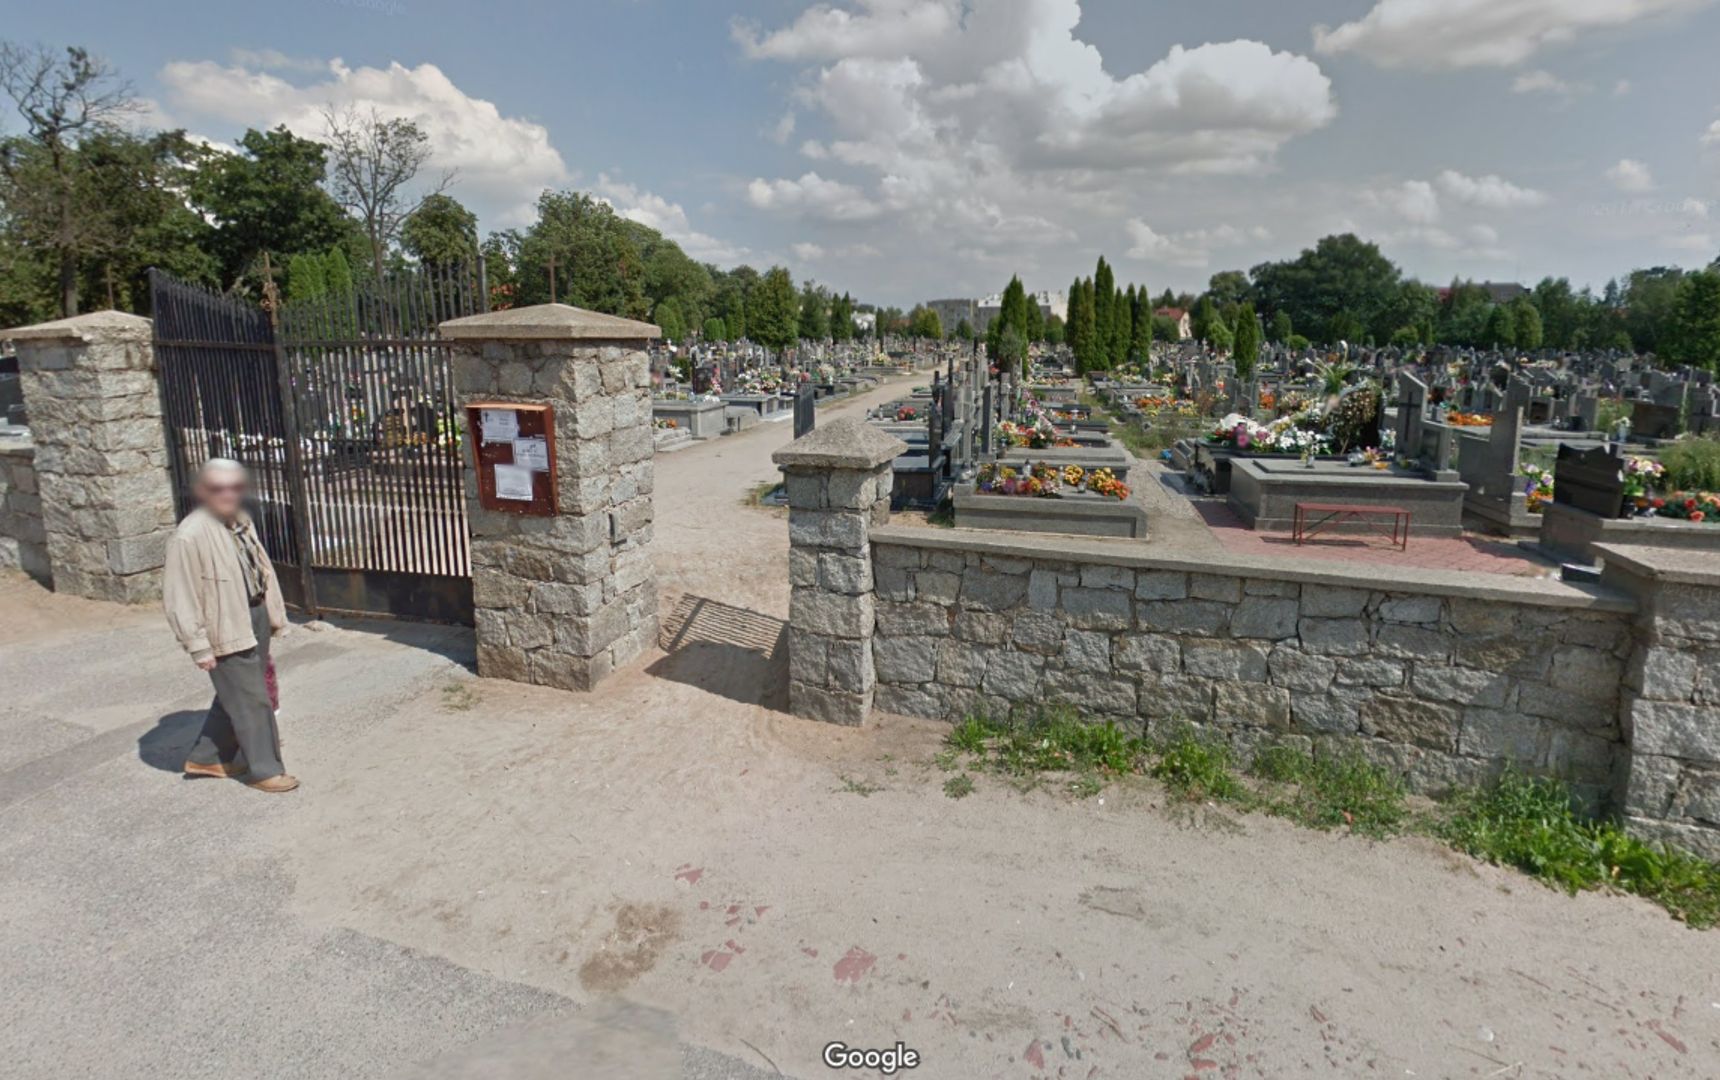 Makabryczne odkrycie na cmentarzu. Ktoś zakopał noworodka